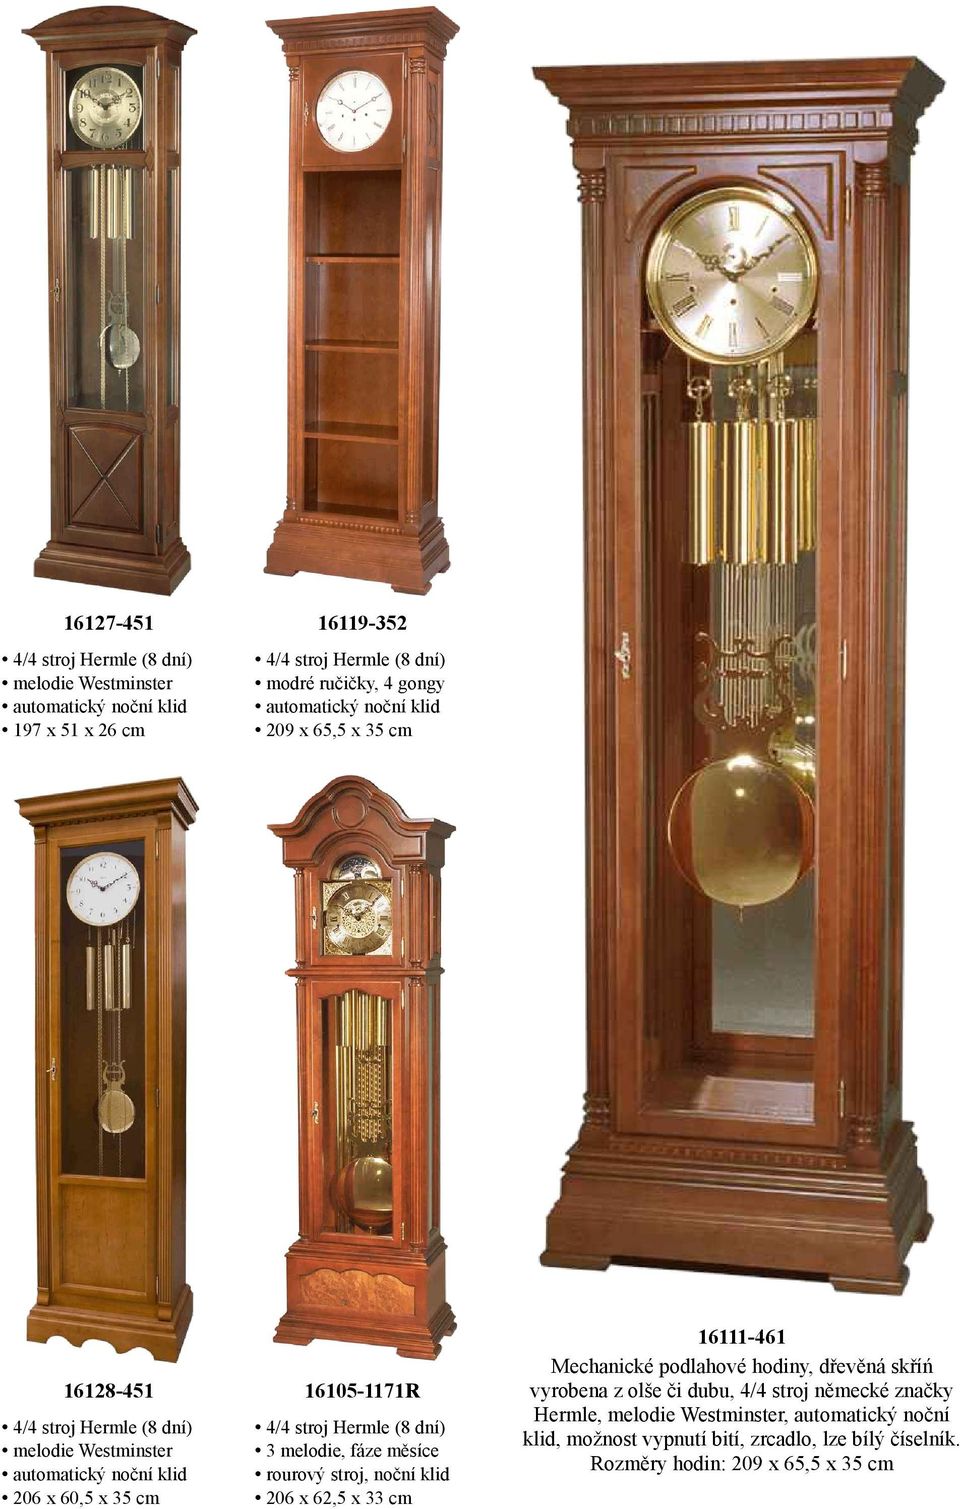 podlahové hodiny, dřevěná skříń vyrobena z olše či dubu, 4/4 stroj německé značky Hermle, melodie